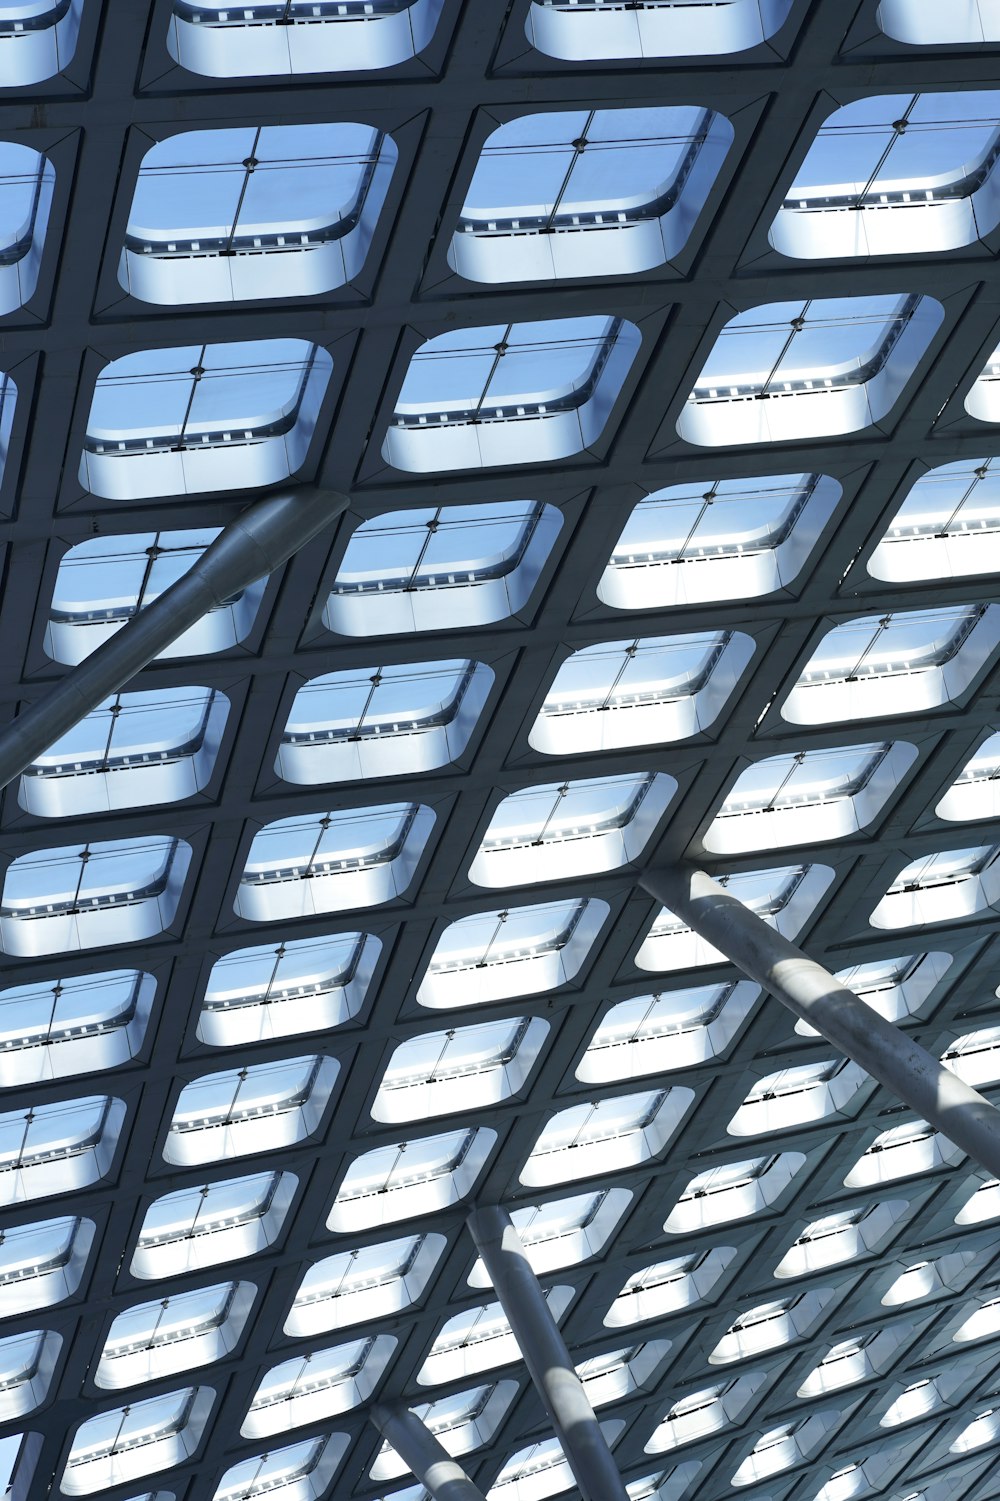 il soffitto di una stazione ferroviaria con molte finestre